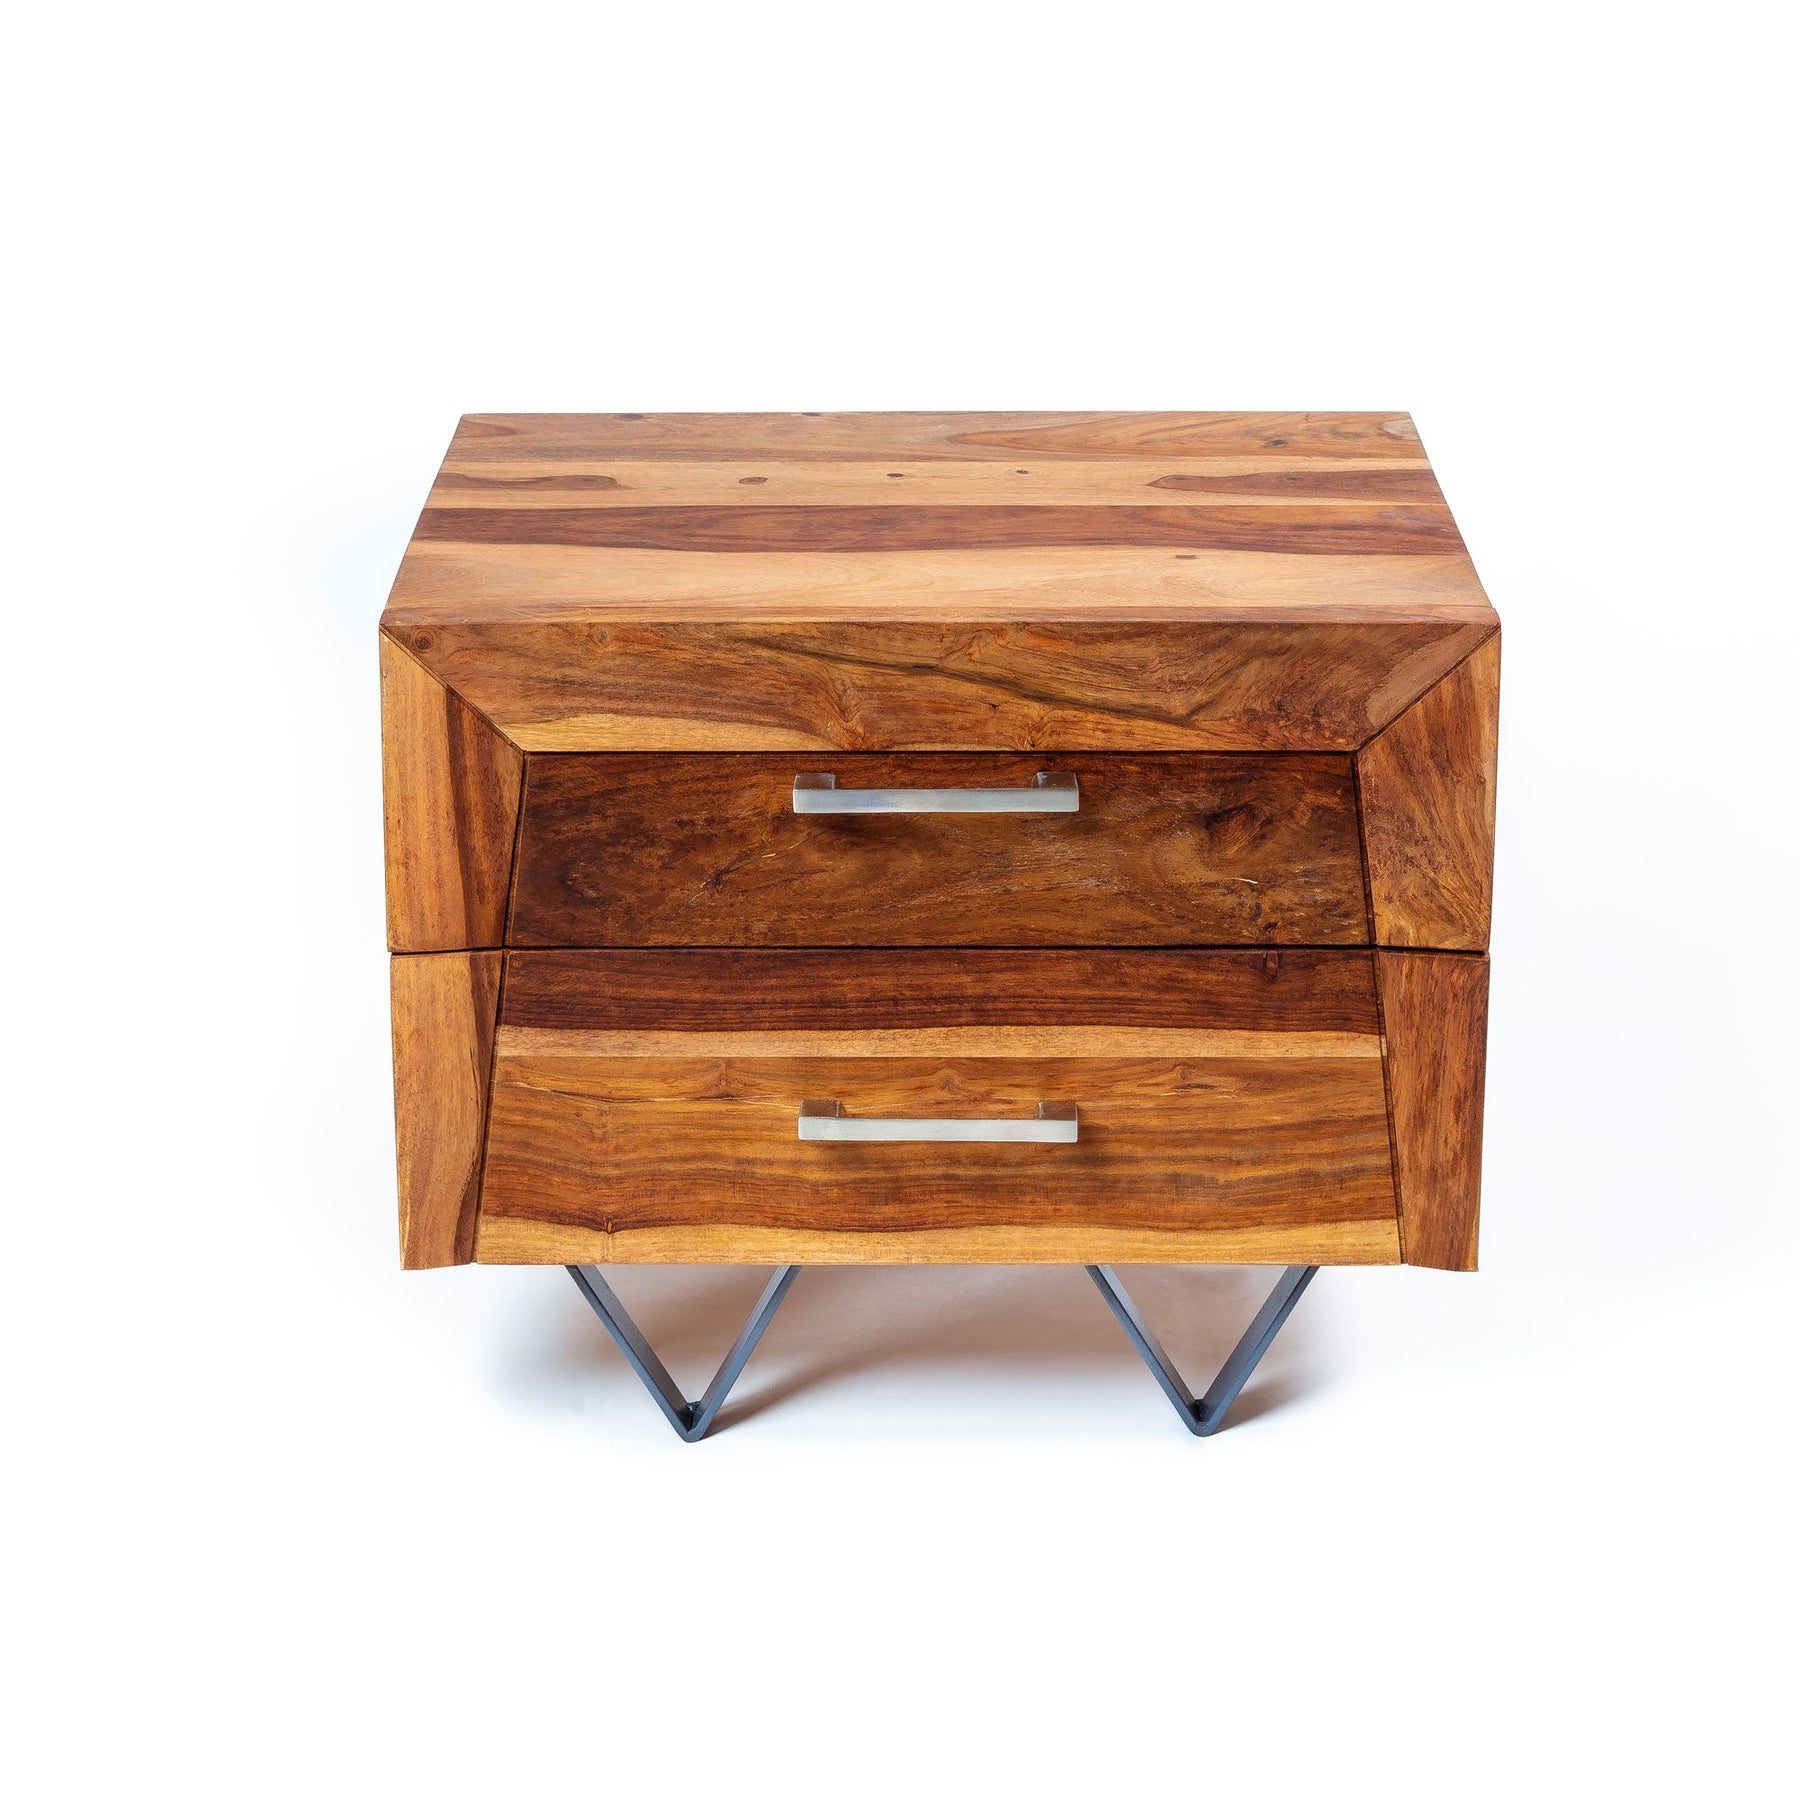 Table de chevet | Table de chevet en bois avec 2 tiroirs et poignées, table d'appoint pour chambre/salon